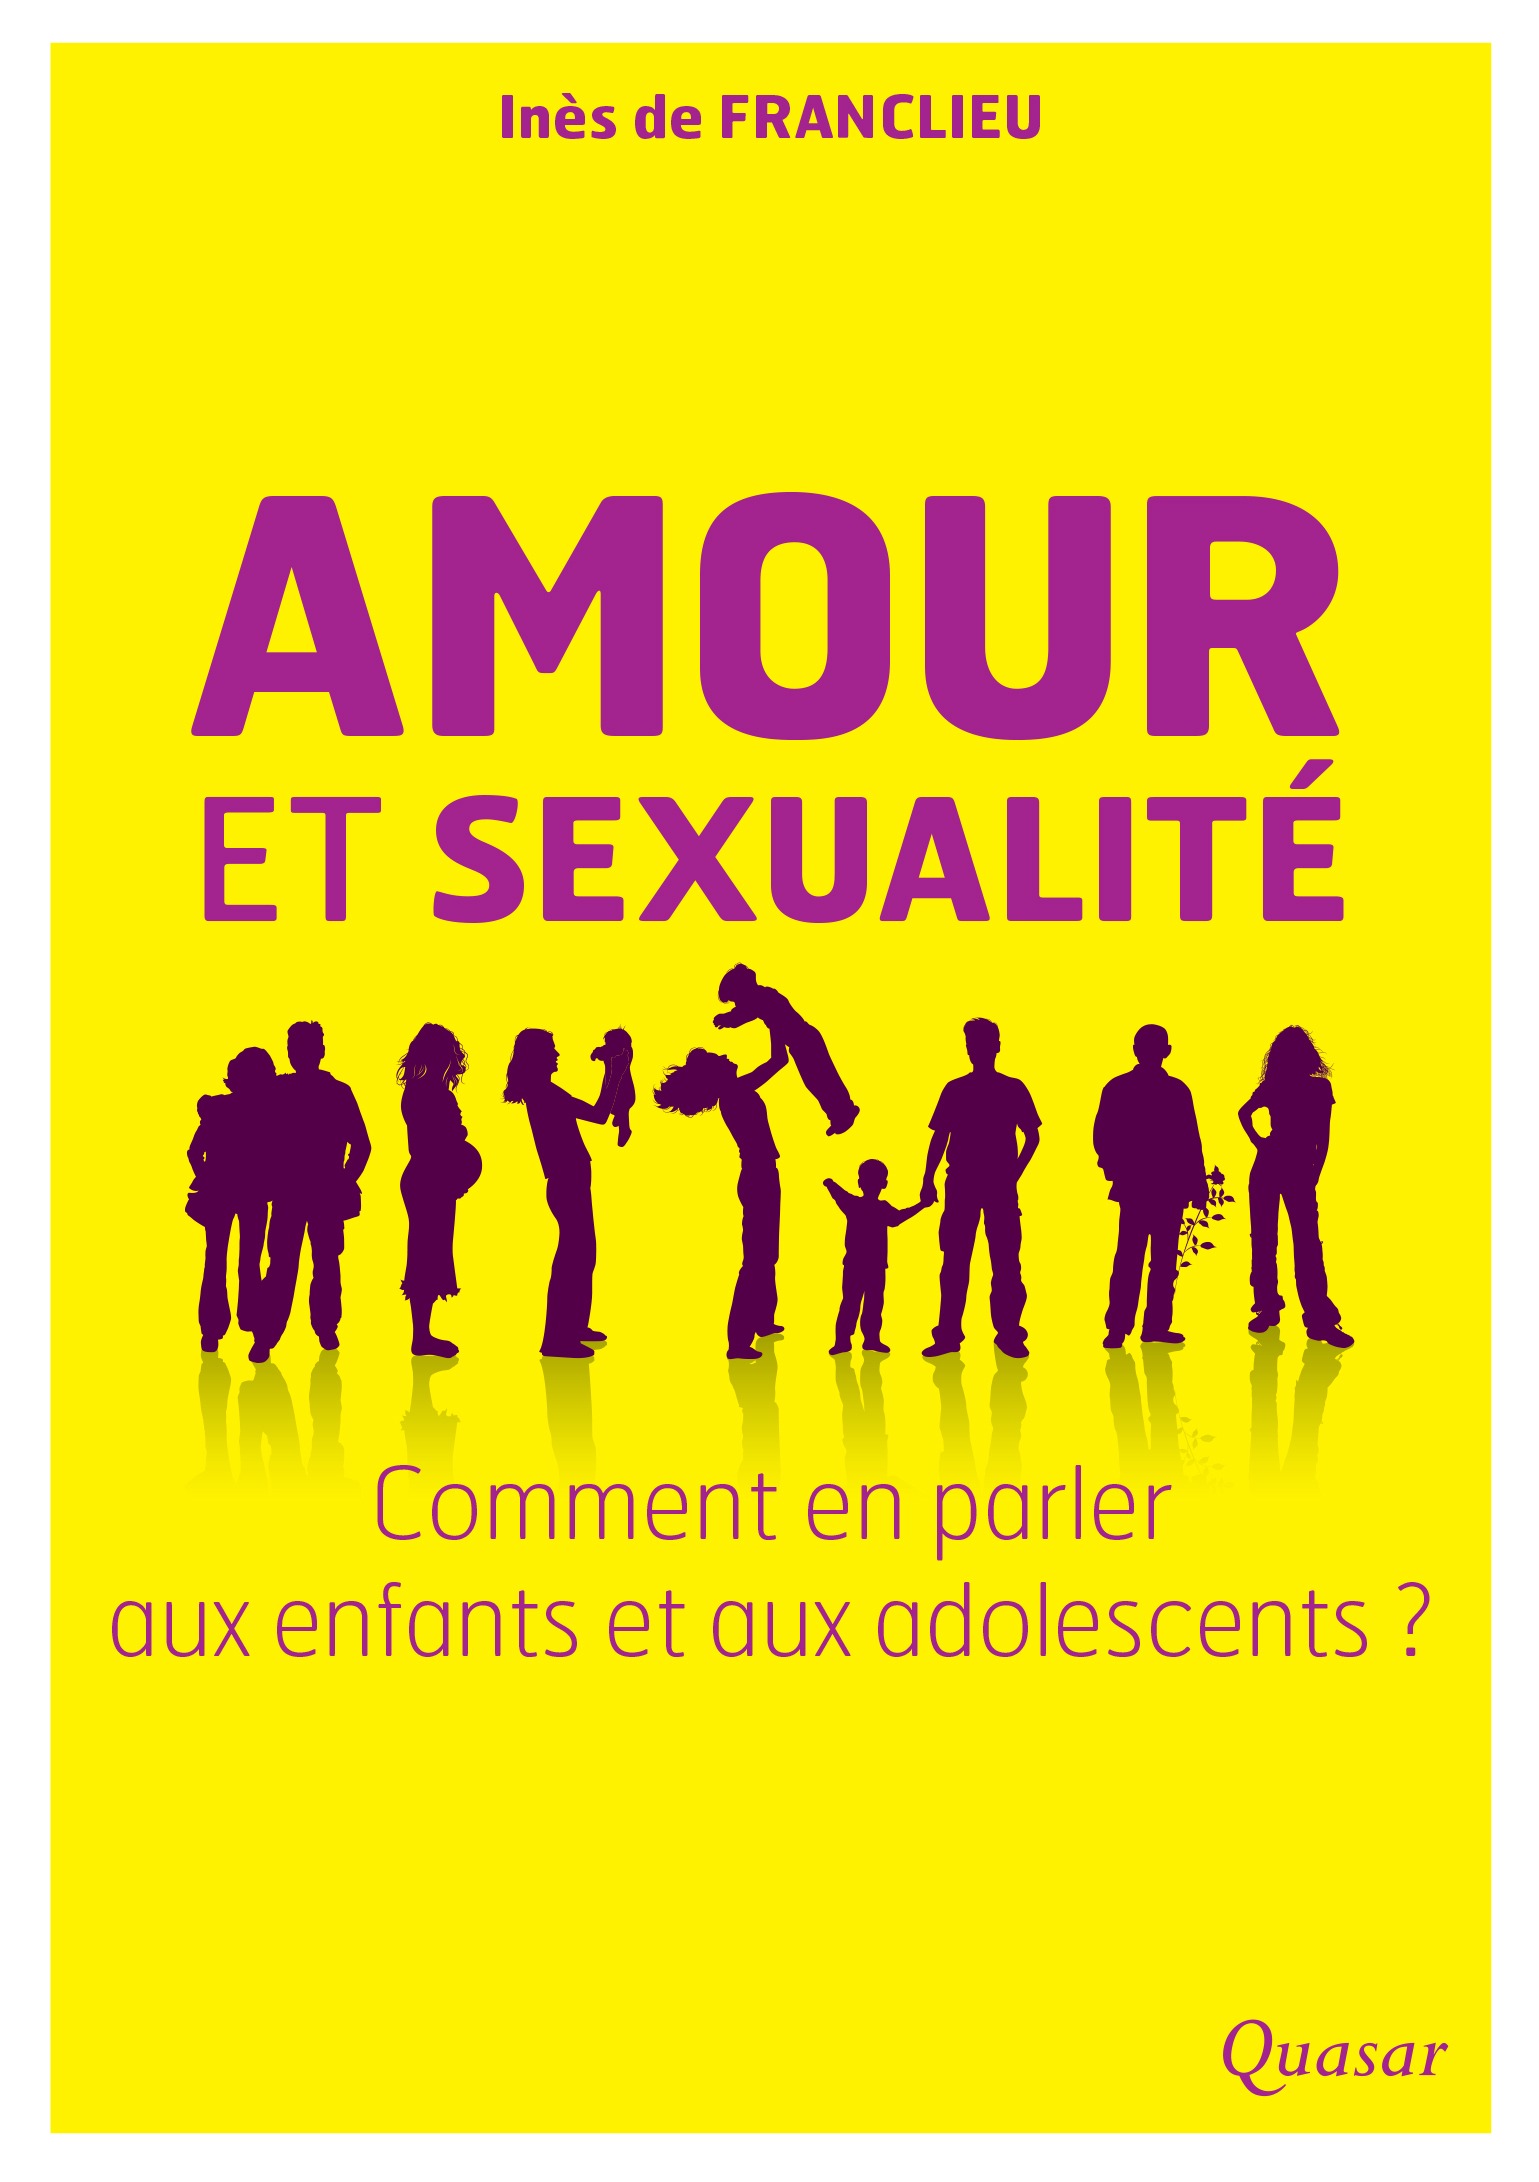 Amour Et Sexualité Comment En Parler Aux Enfants Et Adolescents Éditions Quasar 8505